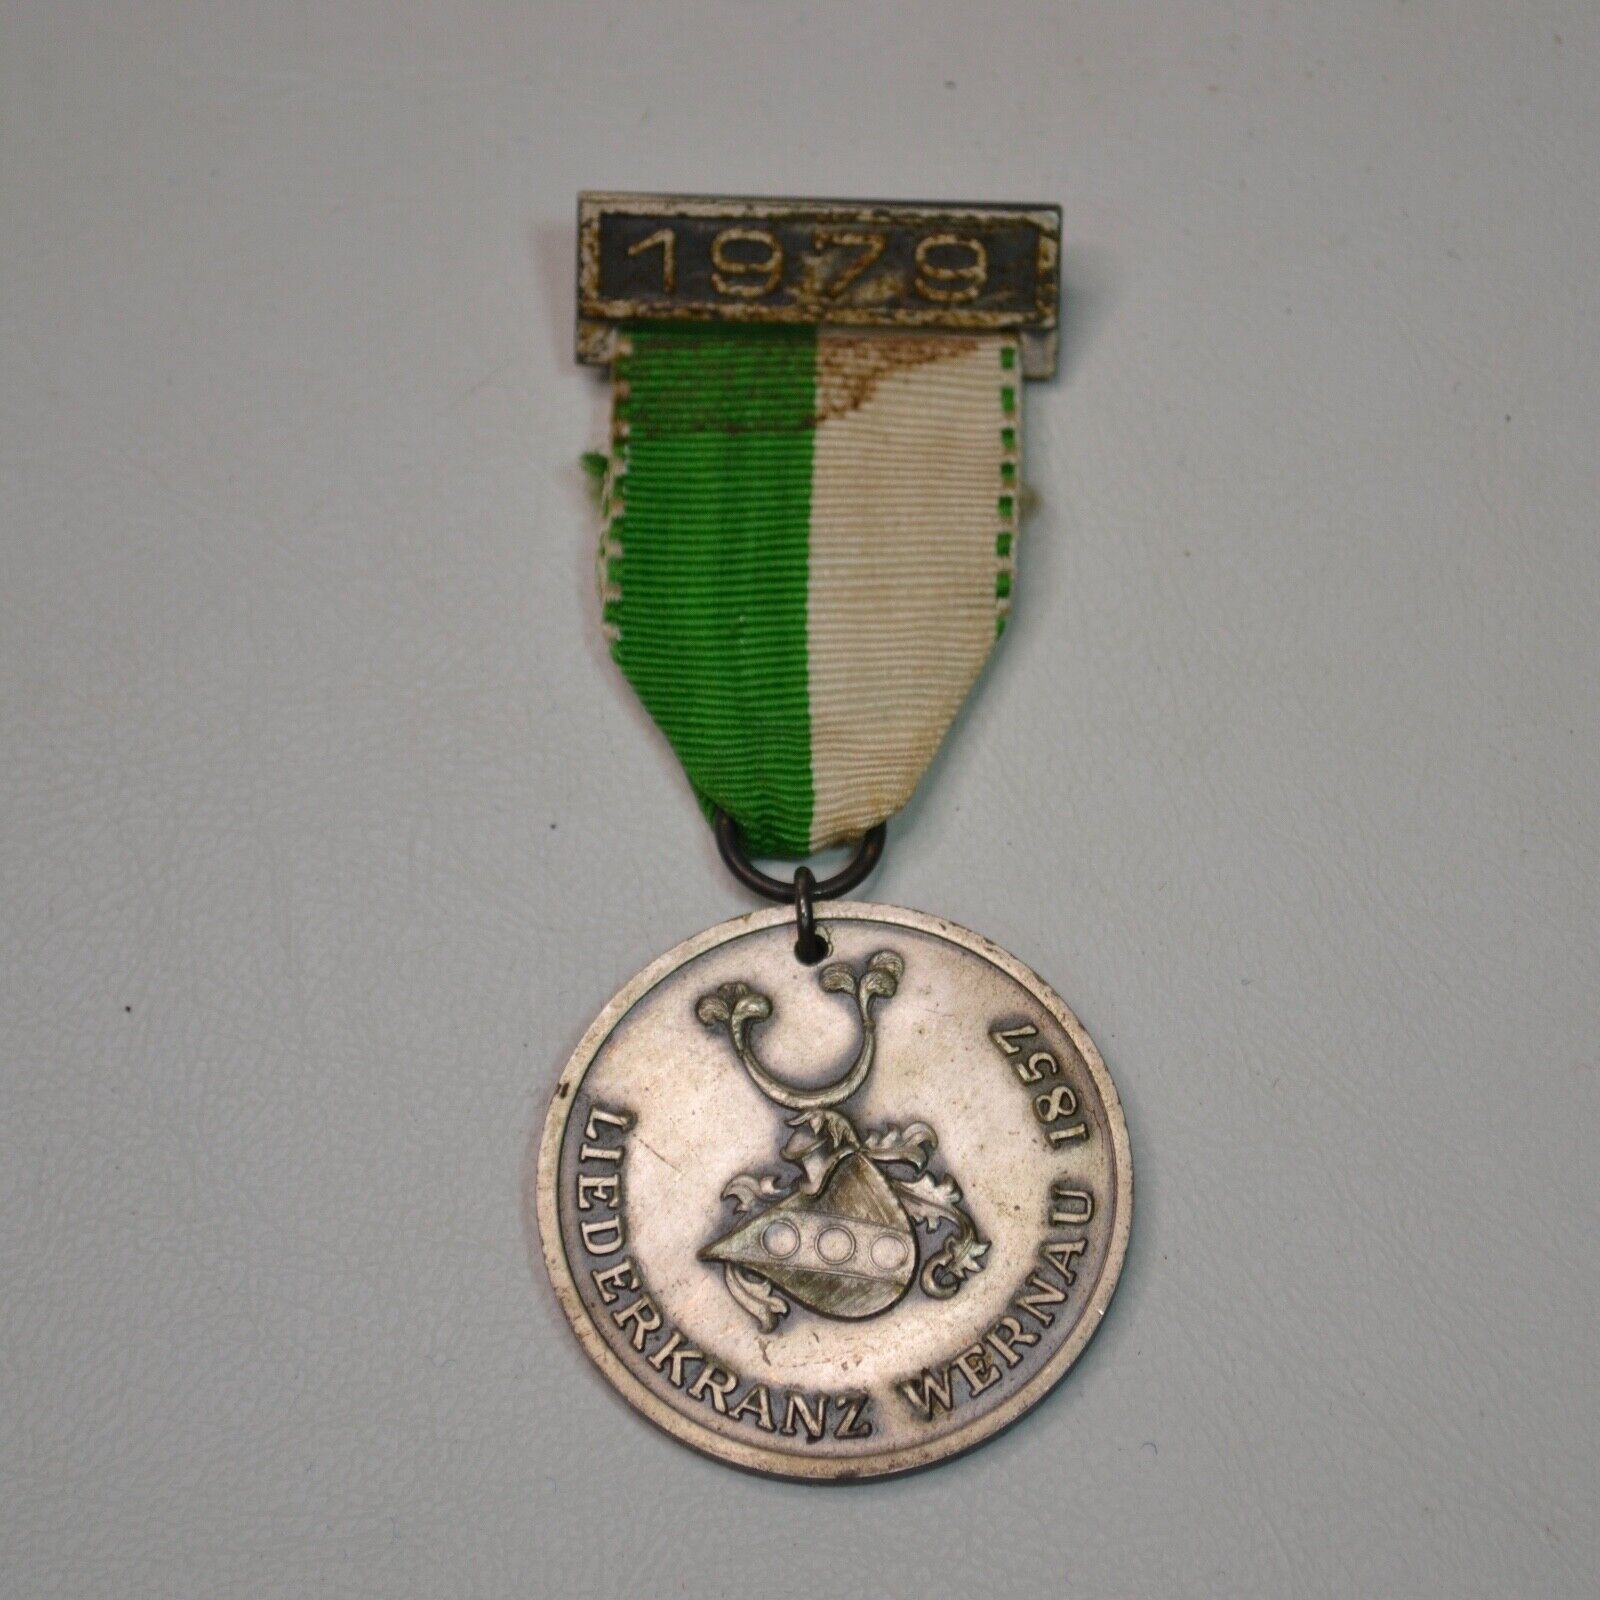 Vintage Liederkranz Wernau Medal Pinback 1979 (L)